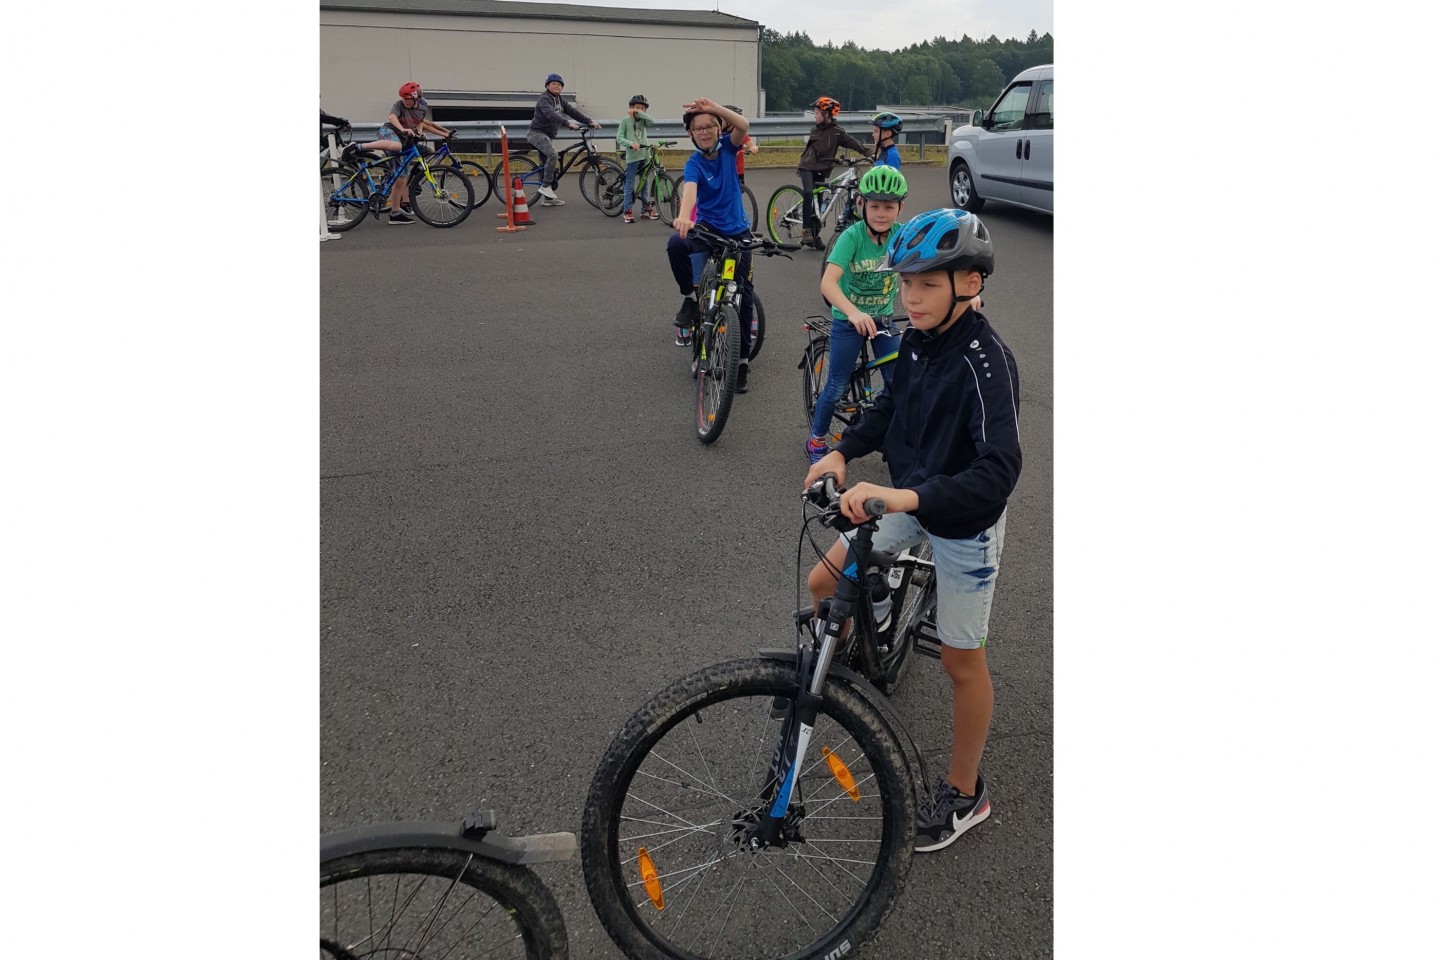 POL-HX: Fahrradturnier für Kinder vom Kinderferienspass Steinheim/ Nieheim